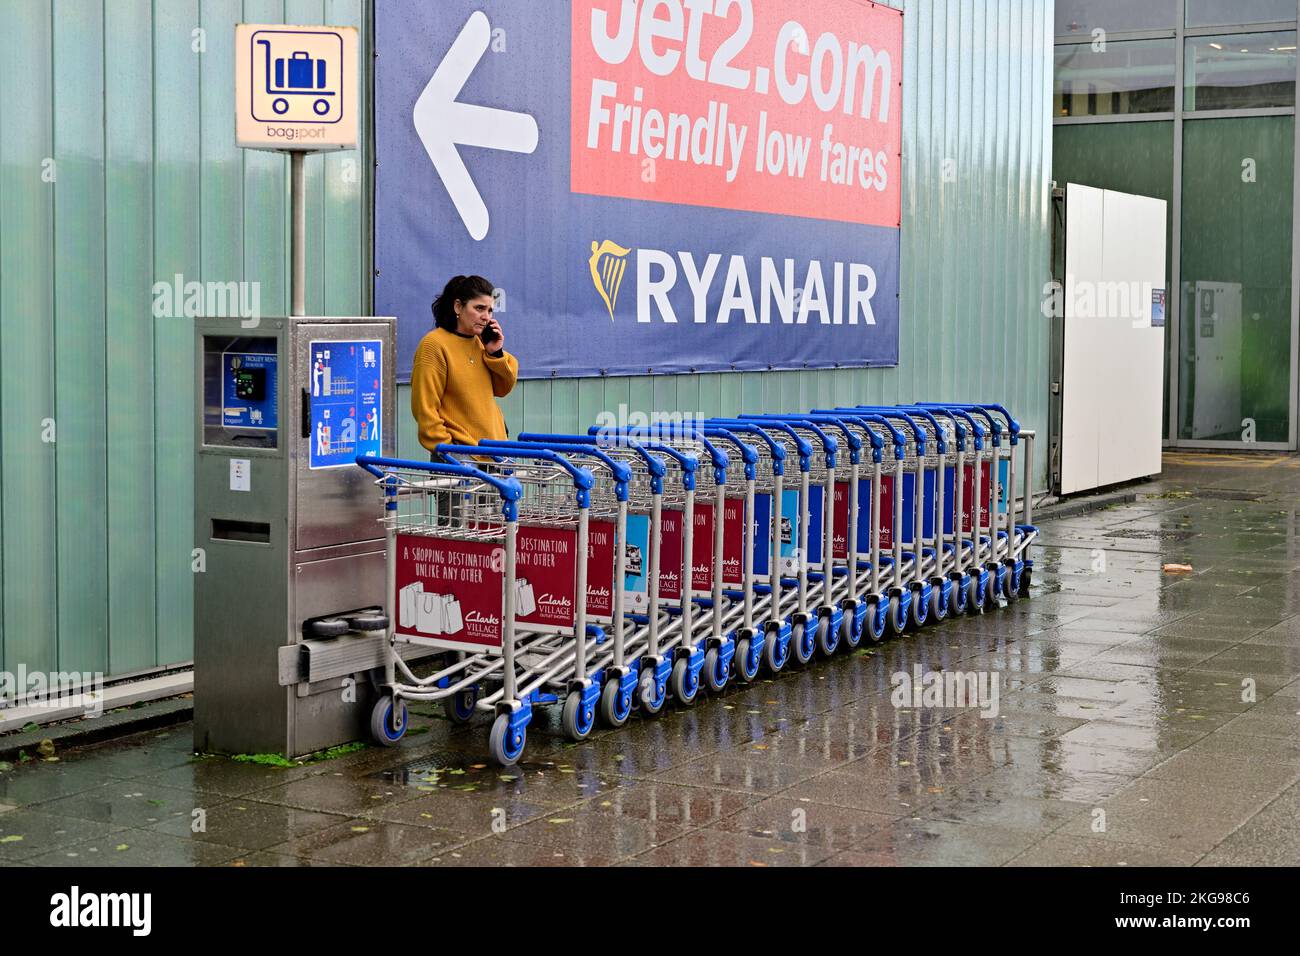 Mietwagen für Gepäckwagen am Flughafen Bristol Terminal, Bezahlung in Münzen erforderlich, um die Wagen zur Benutzung freizugeben, UK Stockfoto